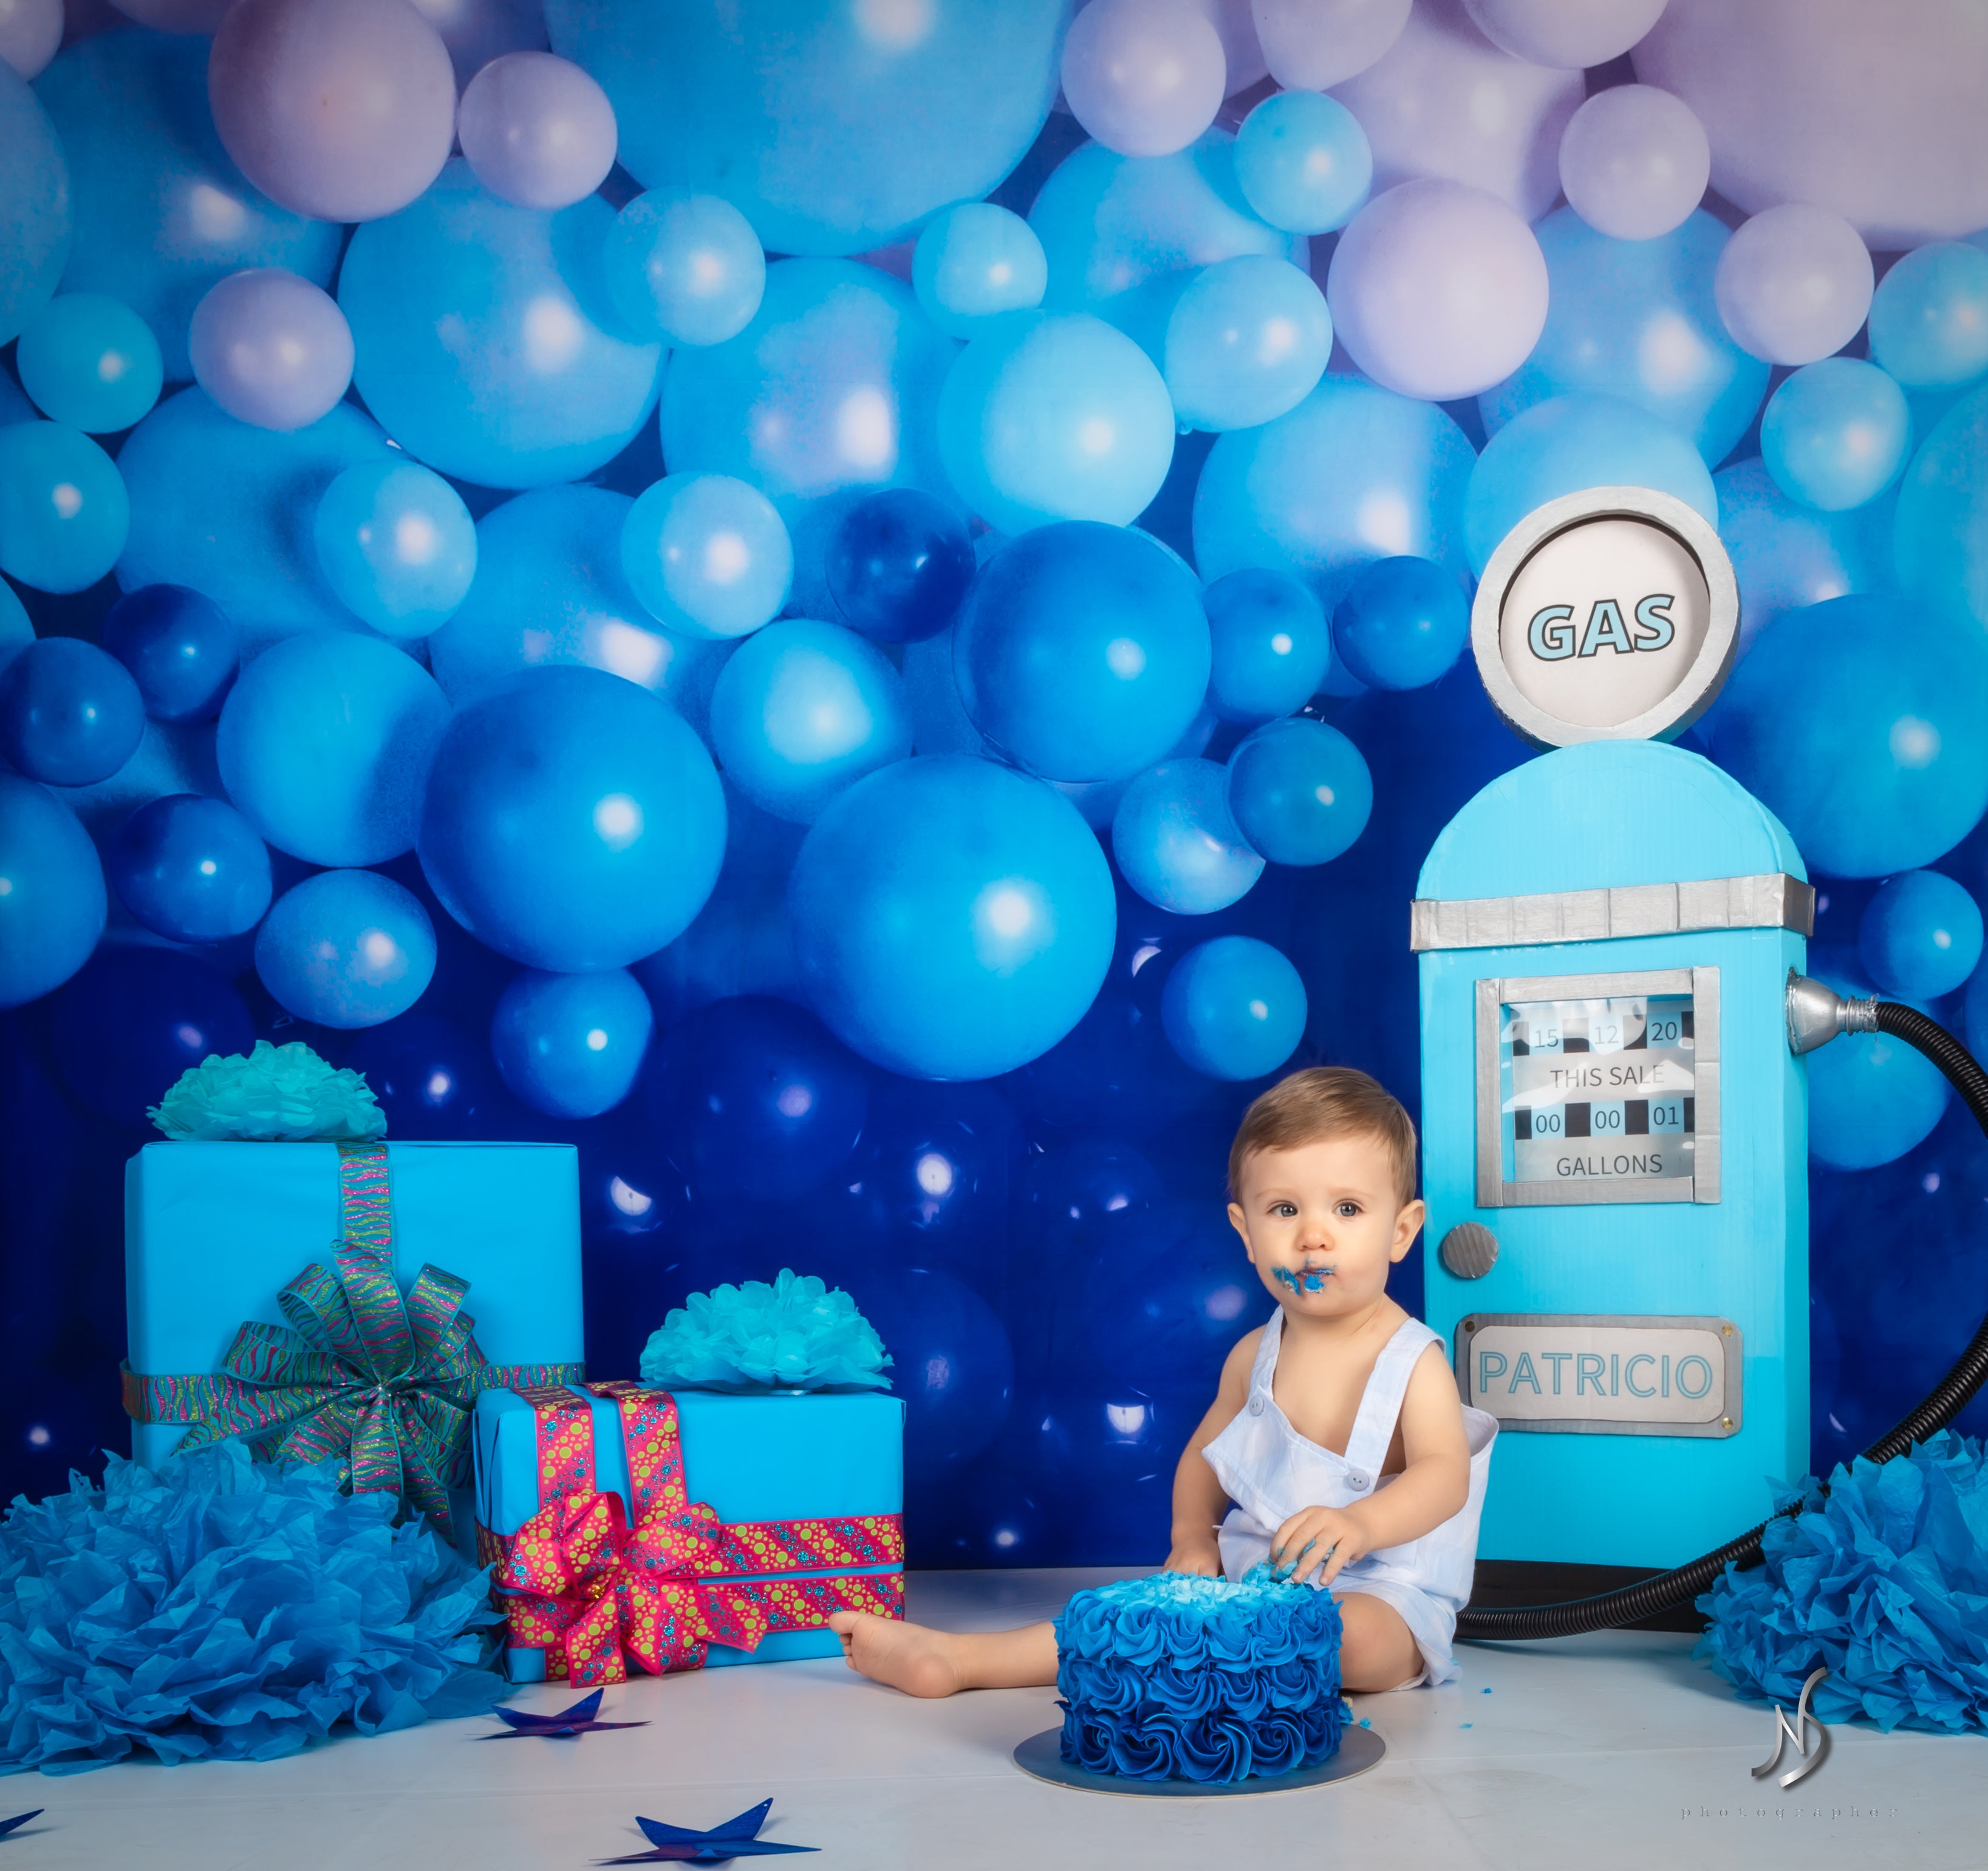 Kate Enfants Mur de ballons Bleu Toile de fond conçu par Mandy Ringe